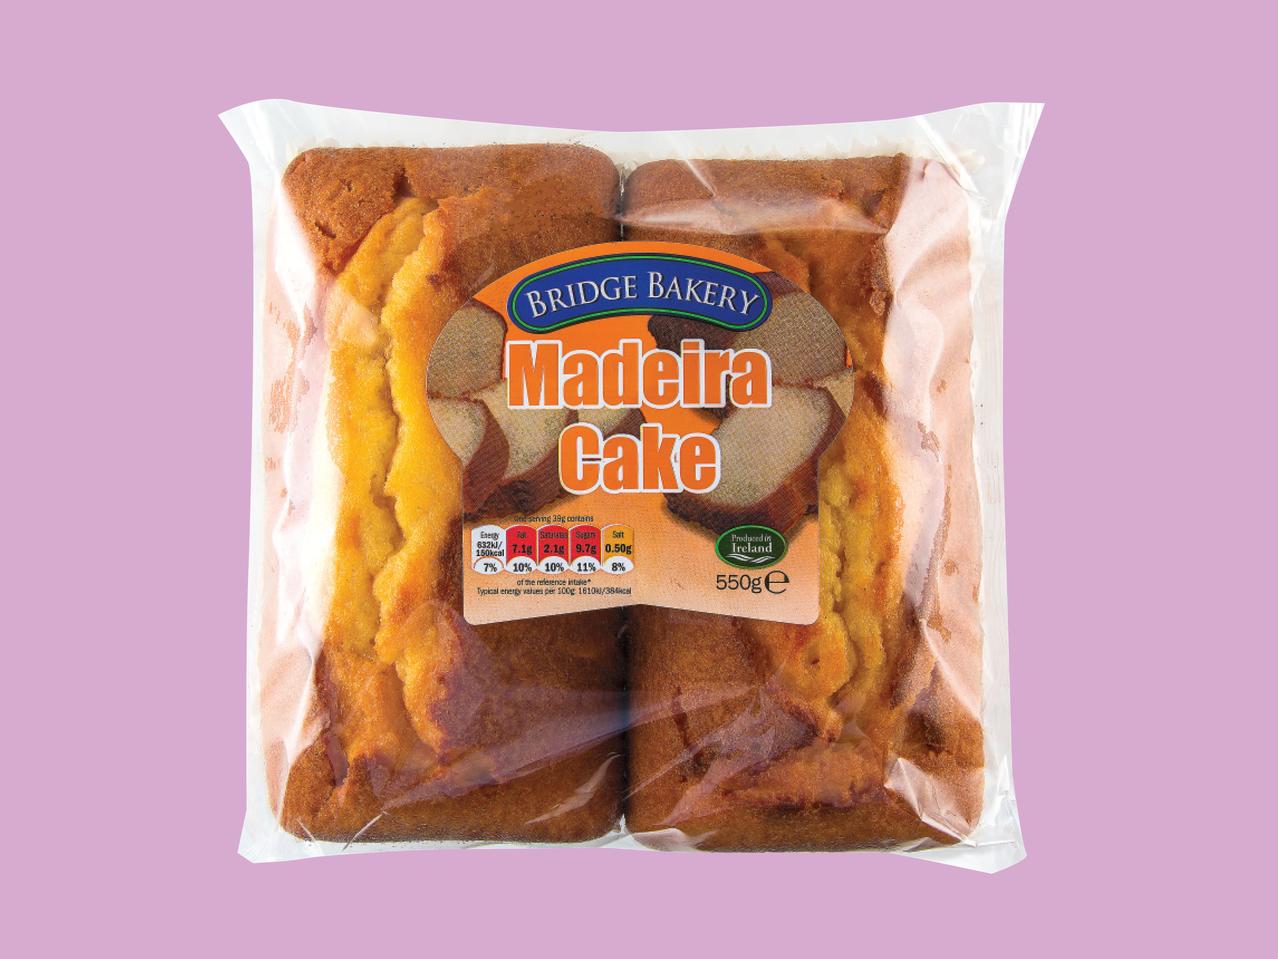 BRIDGE BAKERY Madeira Cake